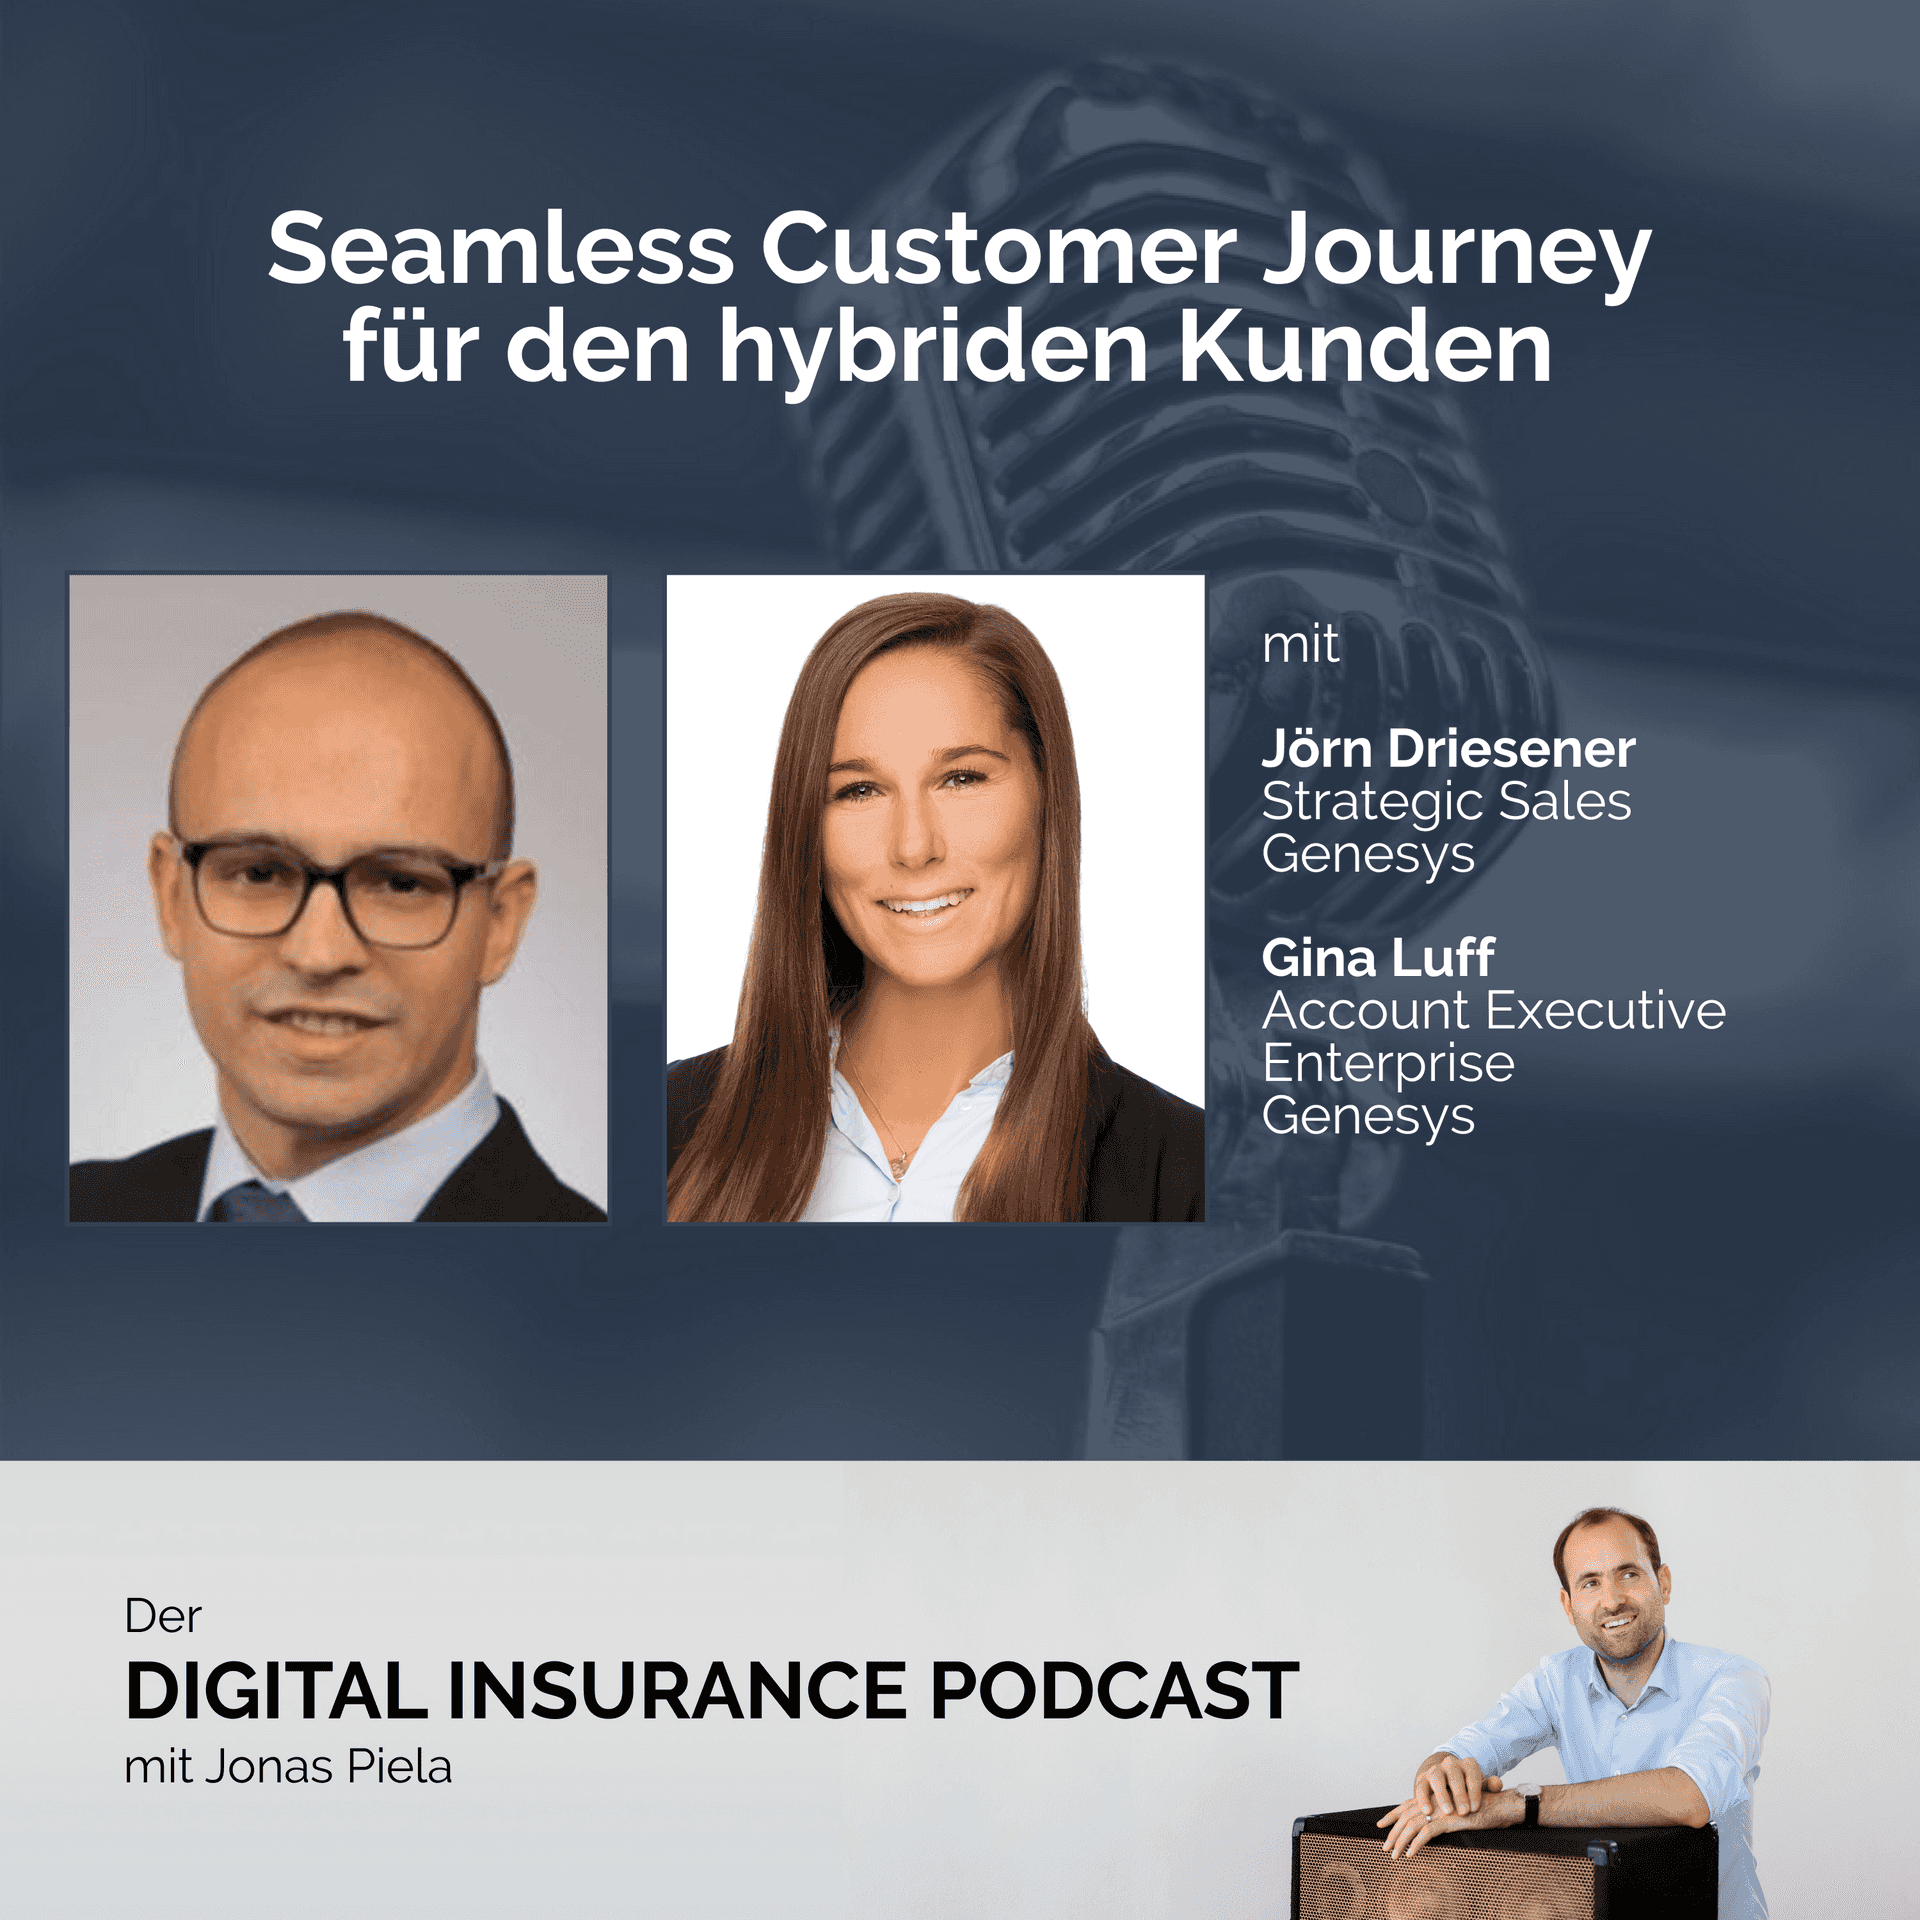 Seamless Customer Journey für den hybriden Kunden mit Gina Luff und Jörn Driesener